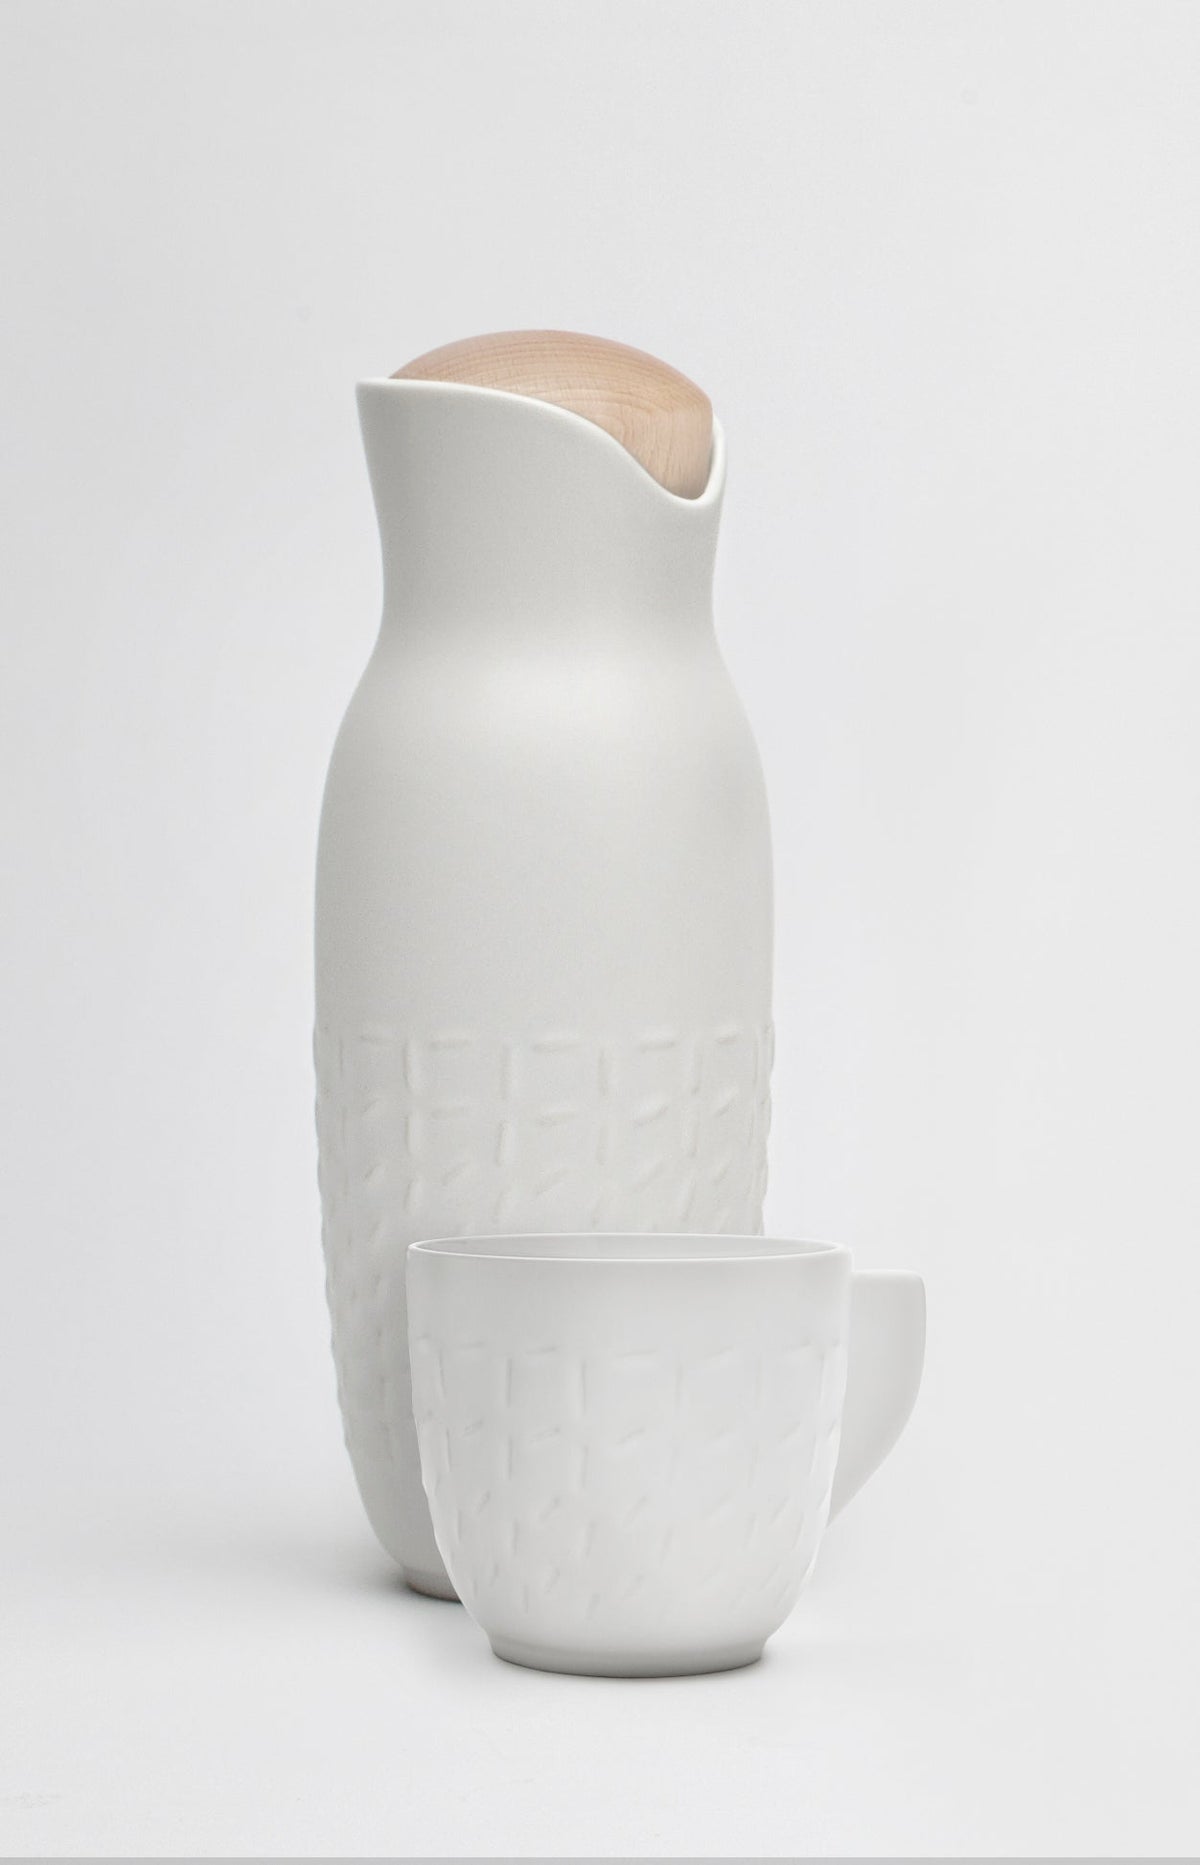 Footprint Carafe Set with Tea Cups (no Handles), Carafe 31oz, Cup 10 oz, Ceramics, Bamboo-9